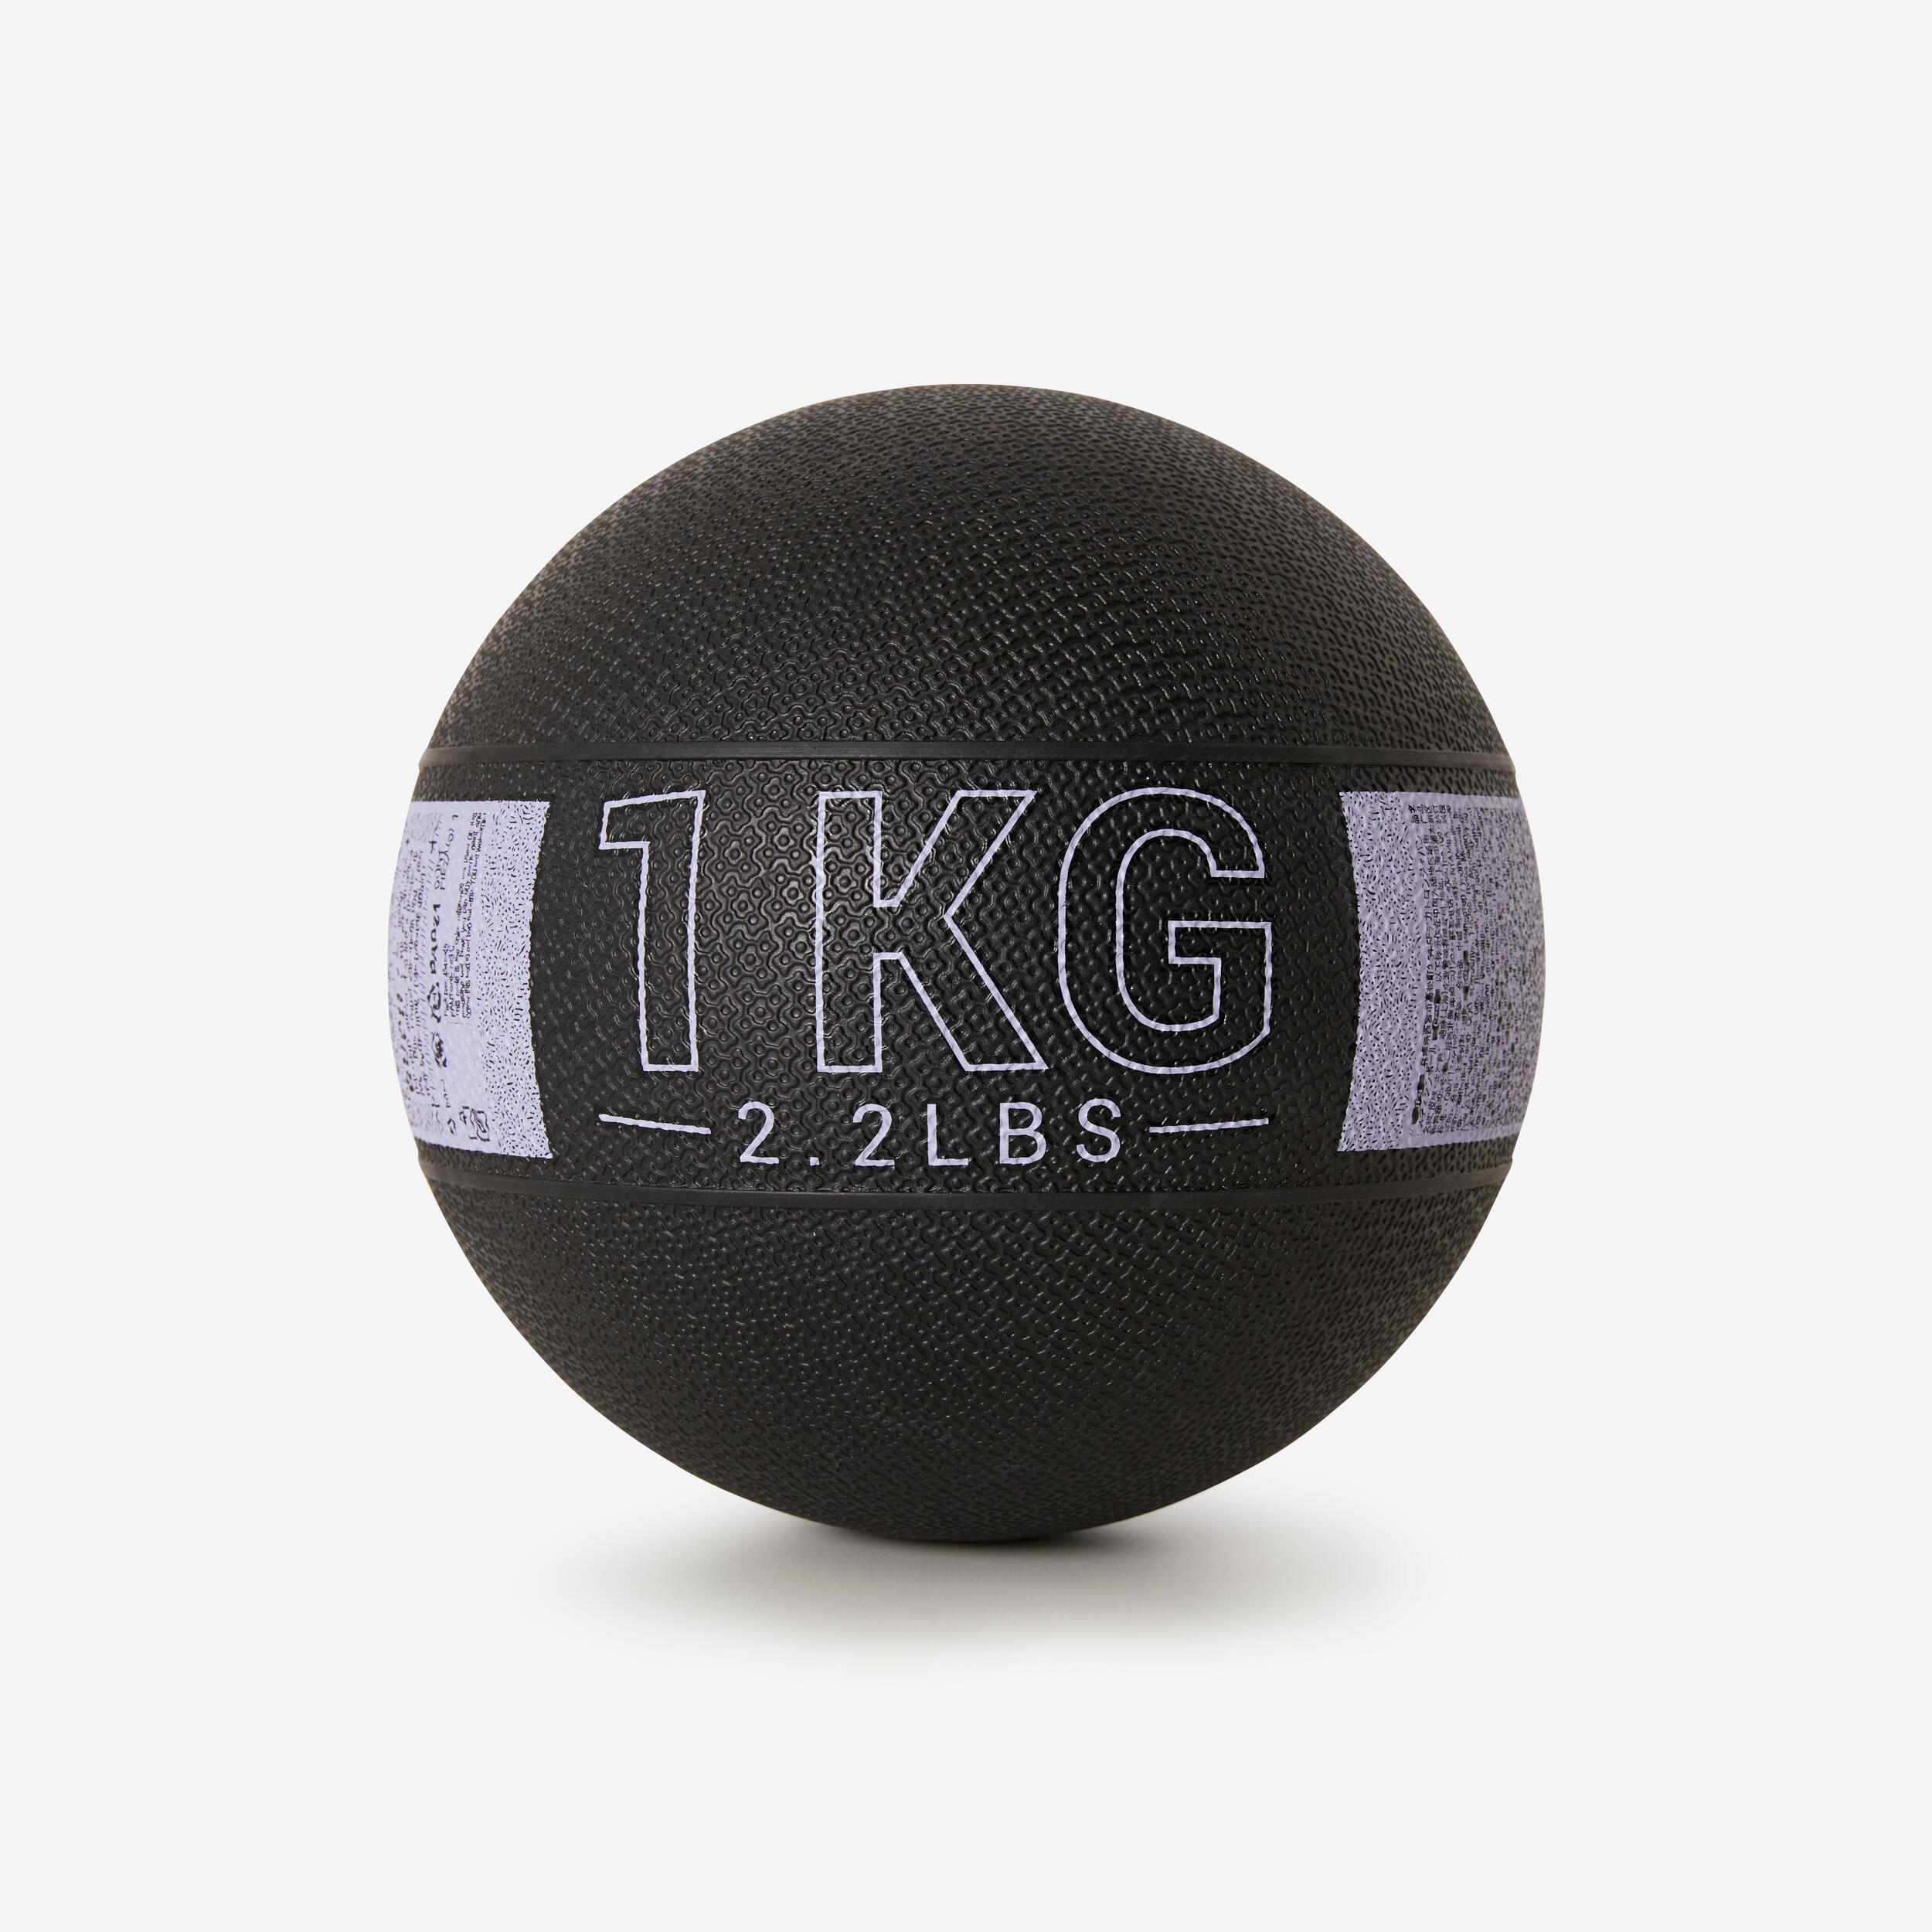 DOMYOS 1 kg Rubber Medicine Ball - Black/Grey